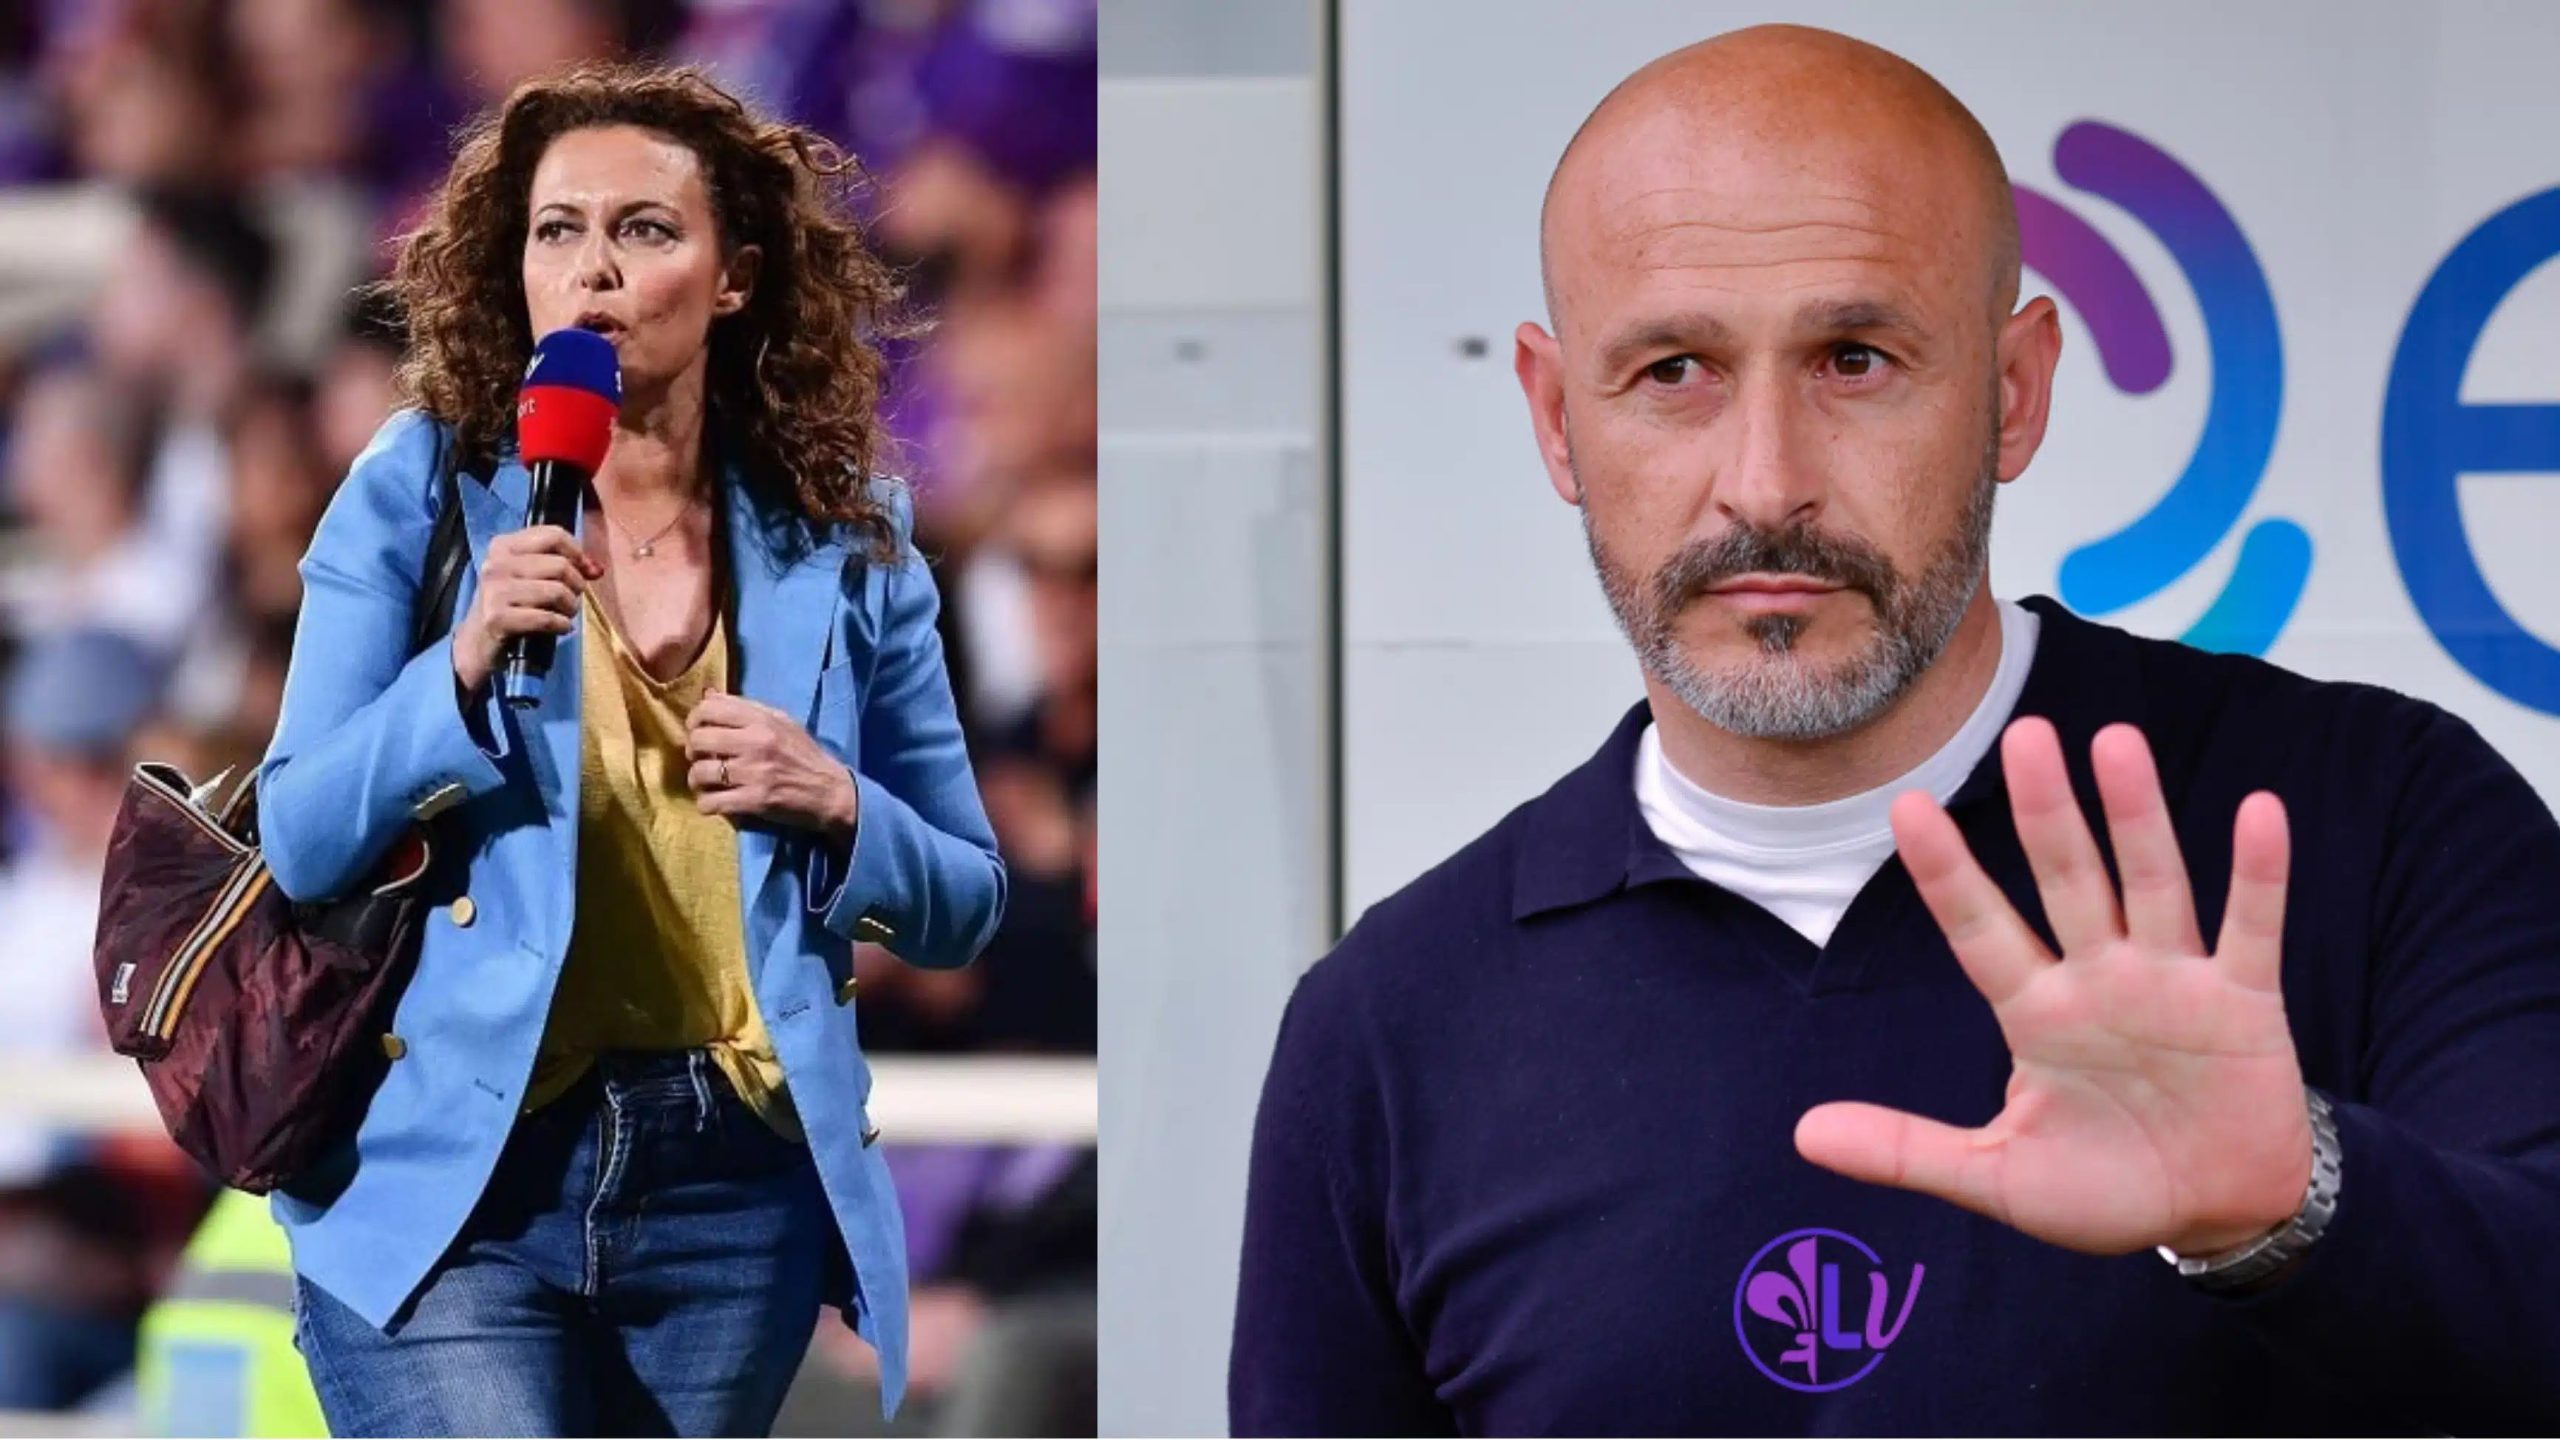 EKL: A Fiorentina-edző örömében megcsókolt egy újságírónőt, aki egy népszerű televíziós felesége - videó